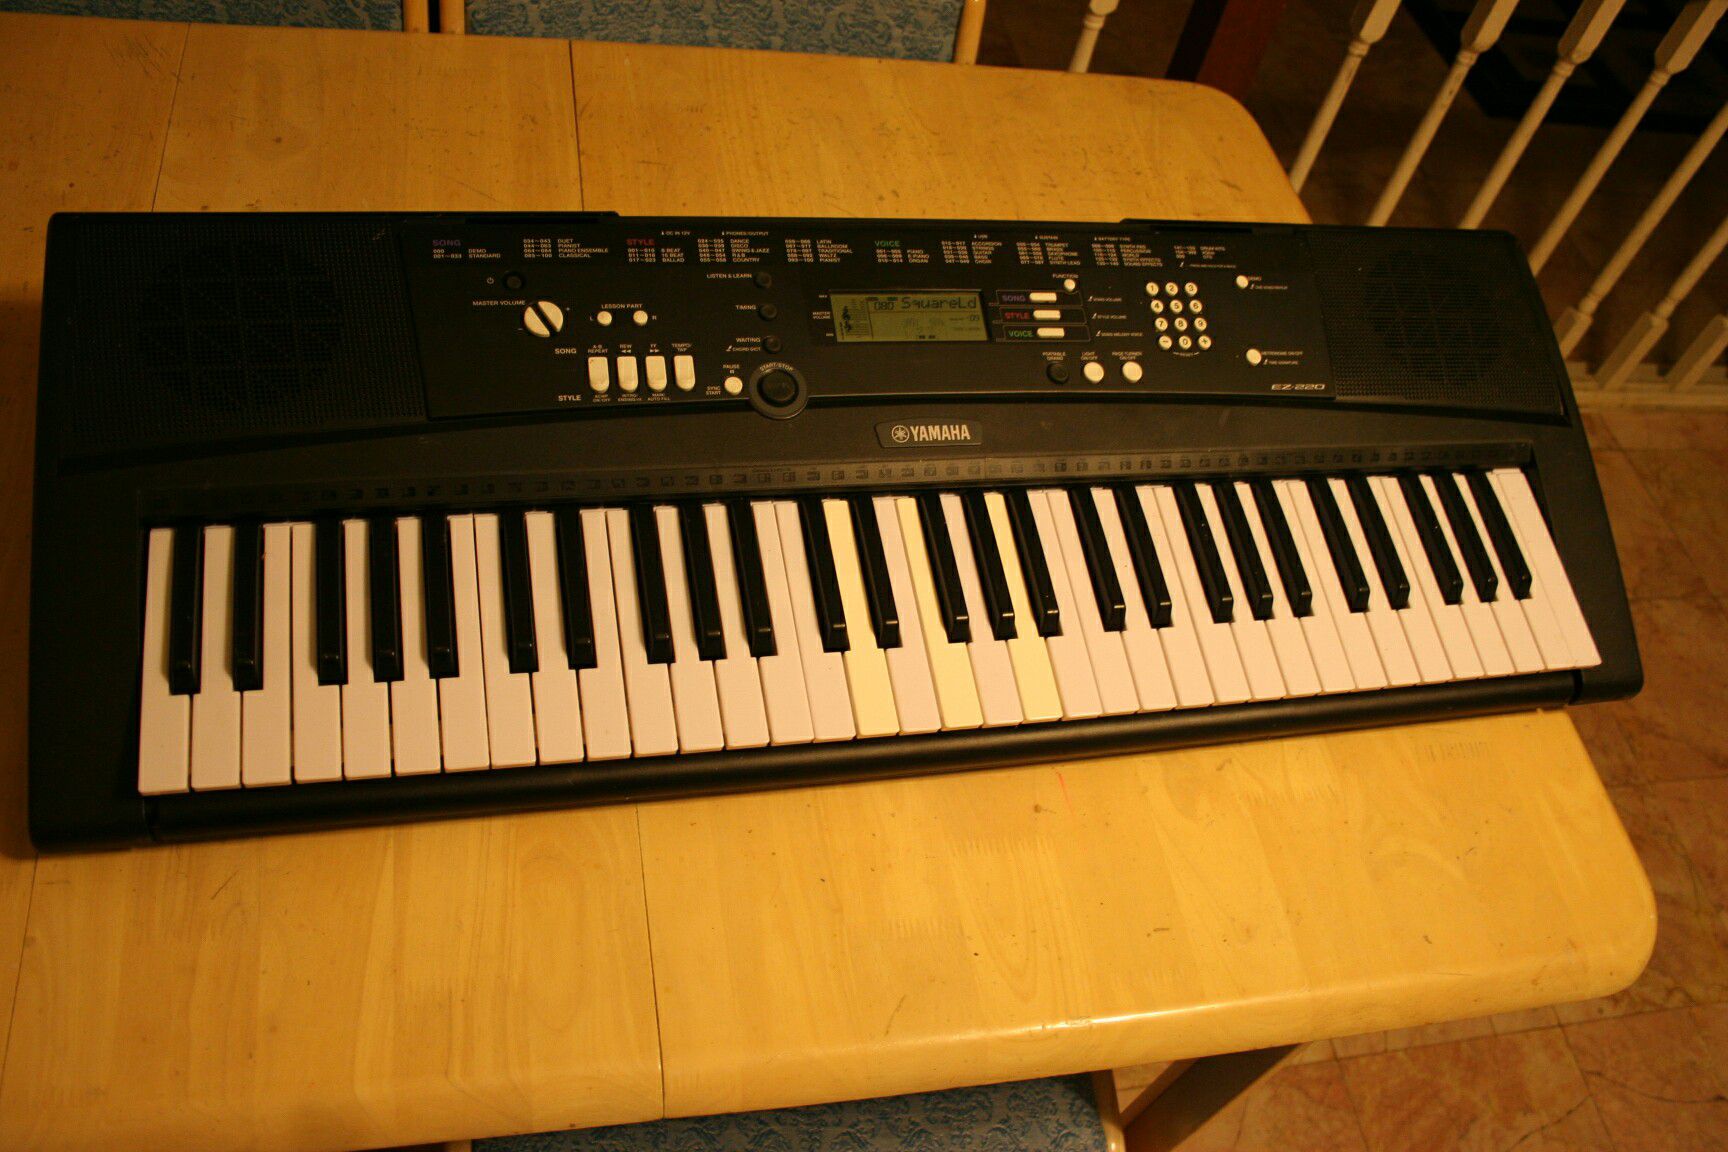 Yamaha EZ-220 music keyboard